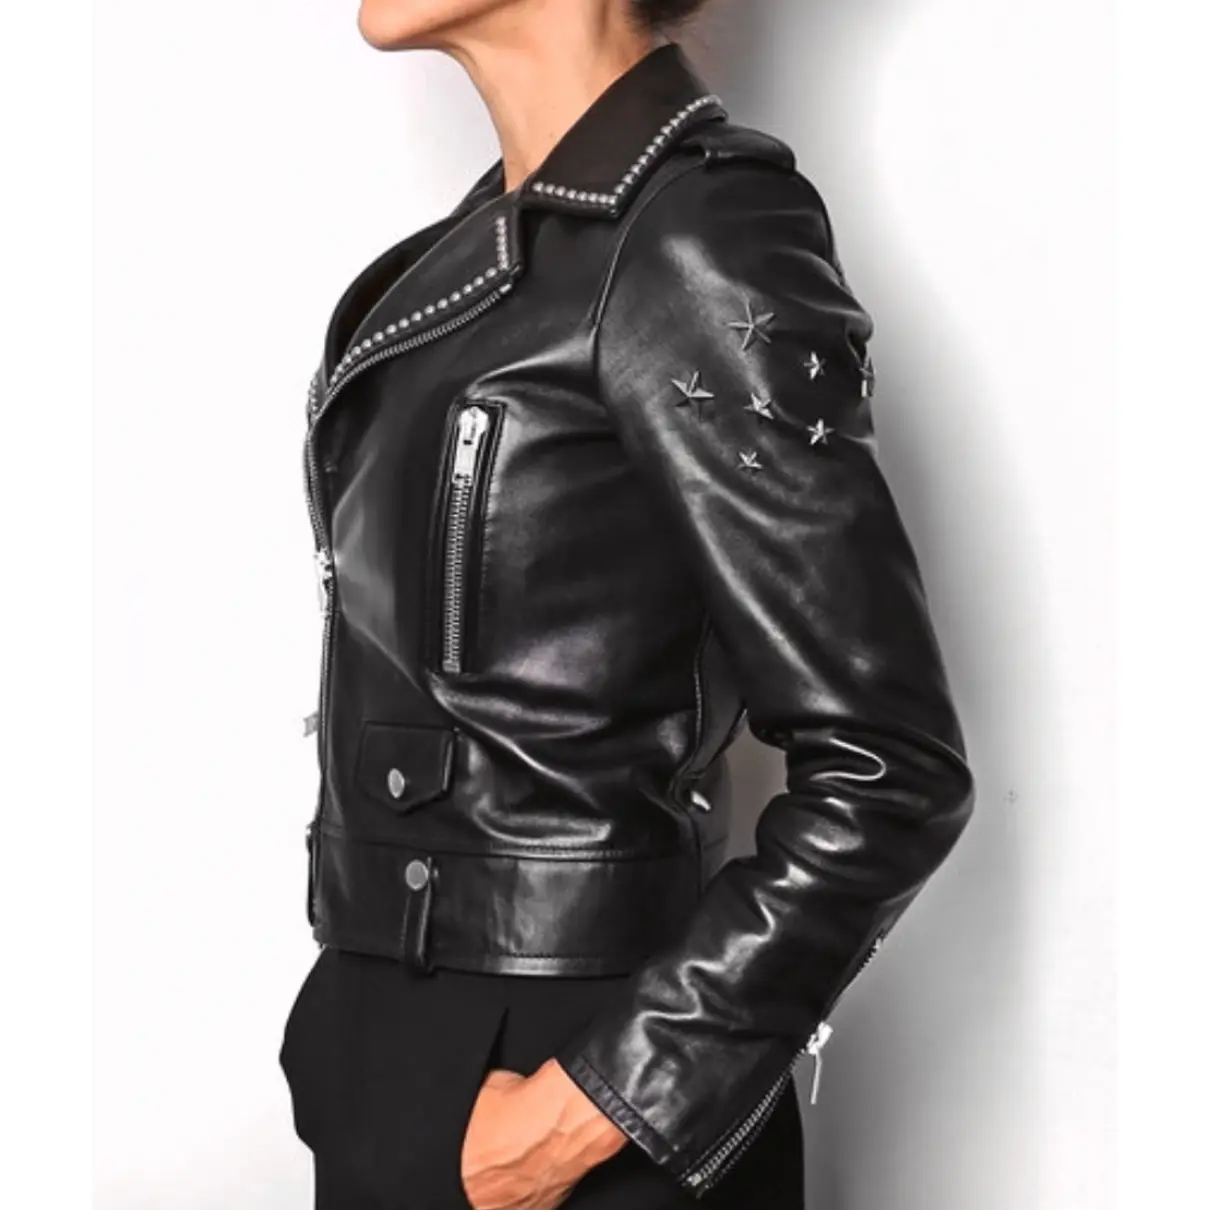 Leather biker jacket Saint Laurent